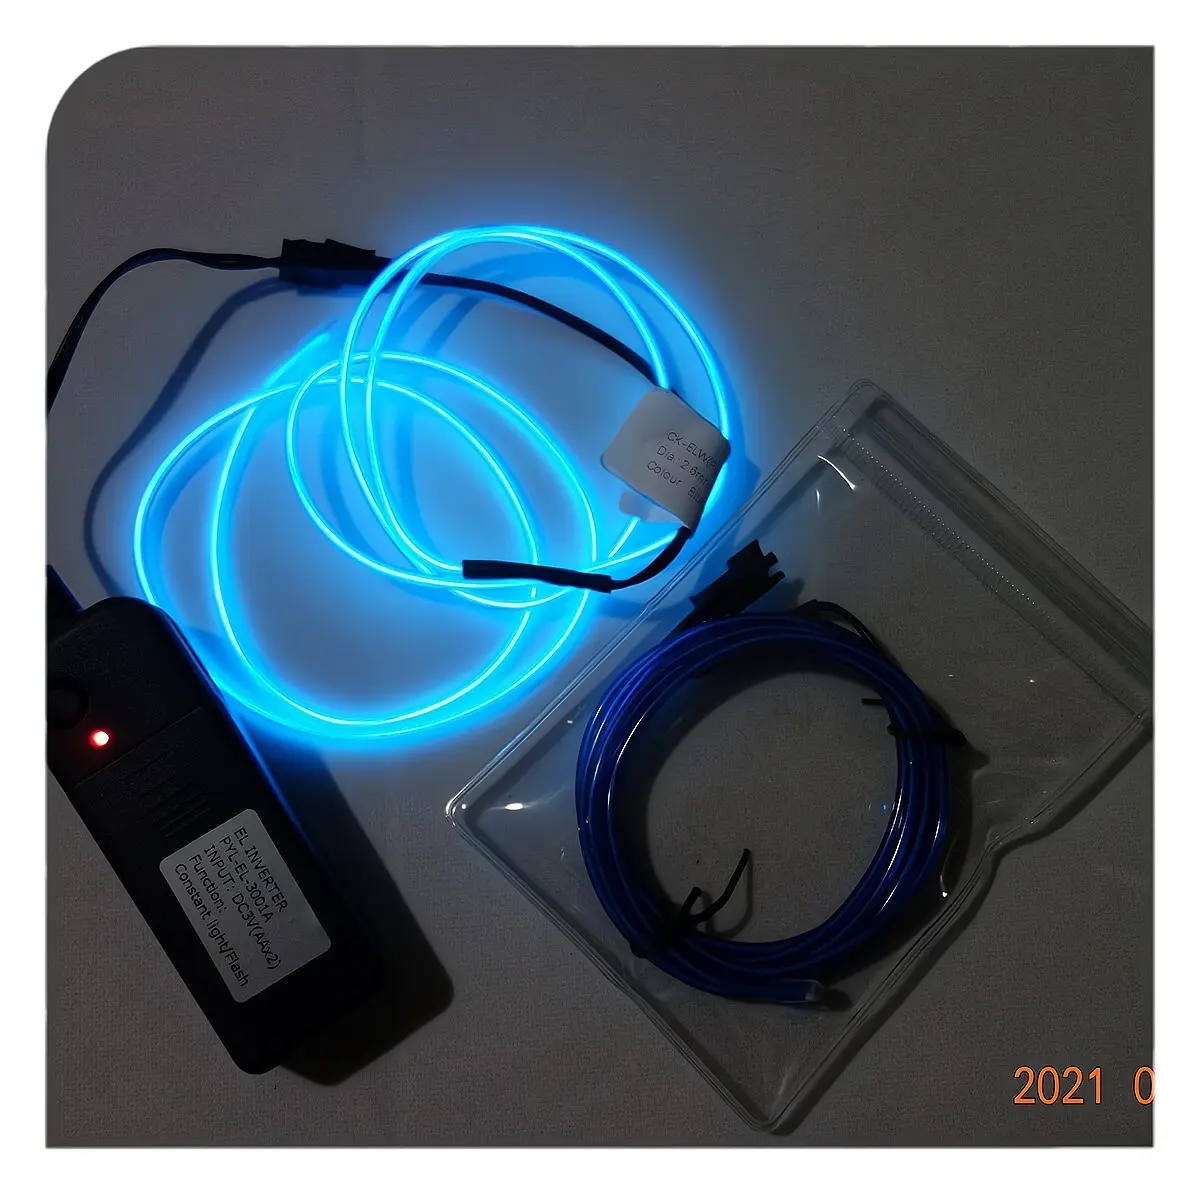 سلك كهربائي / AAX2PCS عاكس سلك كهربائي سلك شديد الإضاءة أزرق اللون سلك كهربائي 100% مستعمل في الولايات المتحدة الأمريكية للاستيراد فولتية الخرج ac90-130v/800hz ROHS.CE